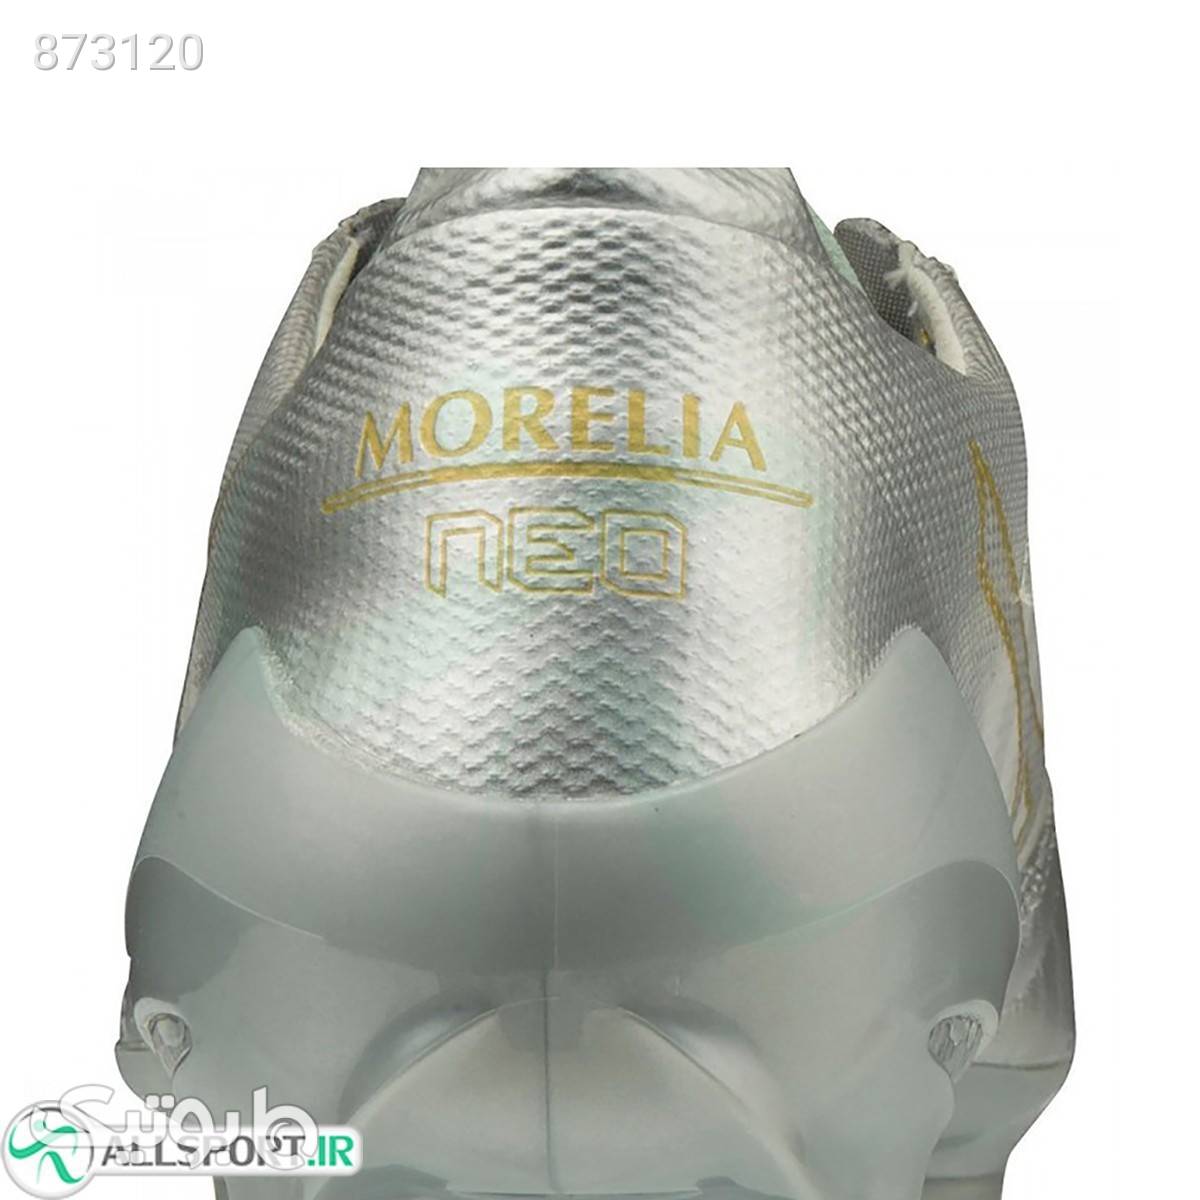 کفش فوتبال میزانو مورلیا طرح اصلی Mizuno Morelia Neo II Beta Silver Gold